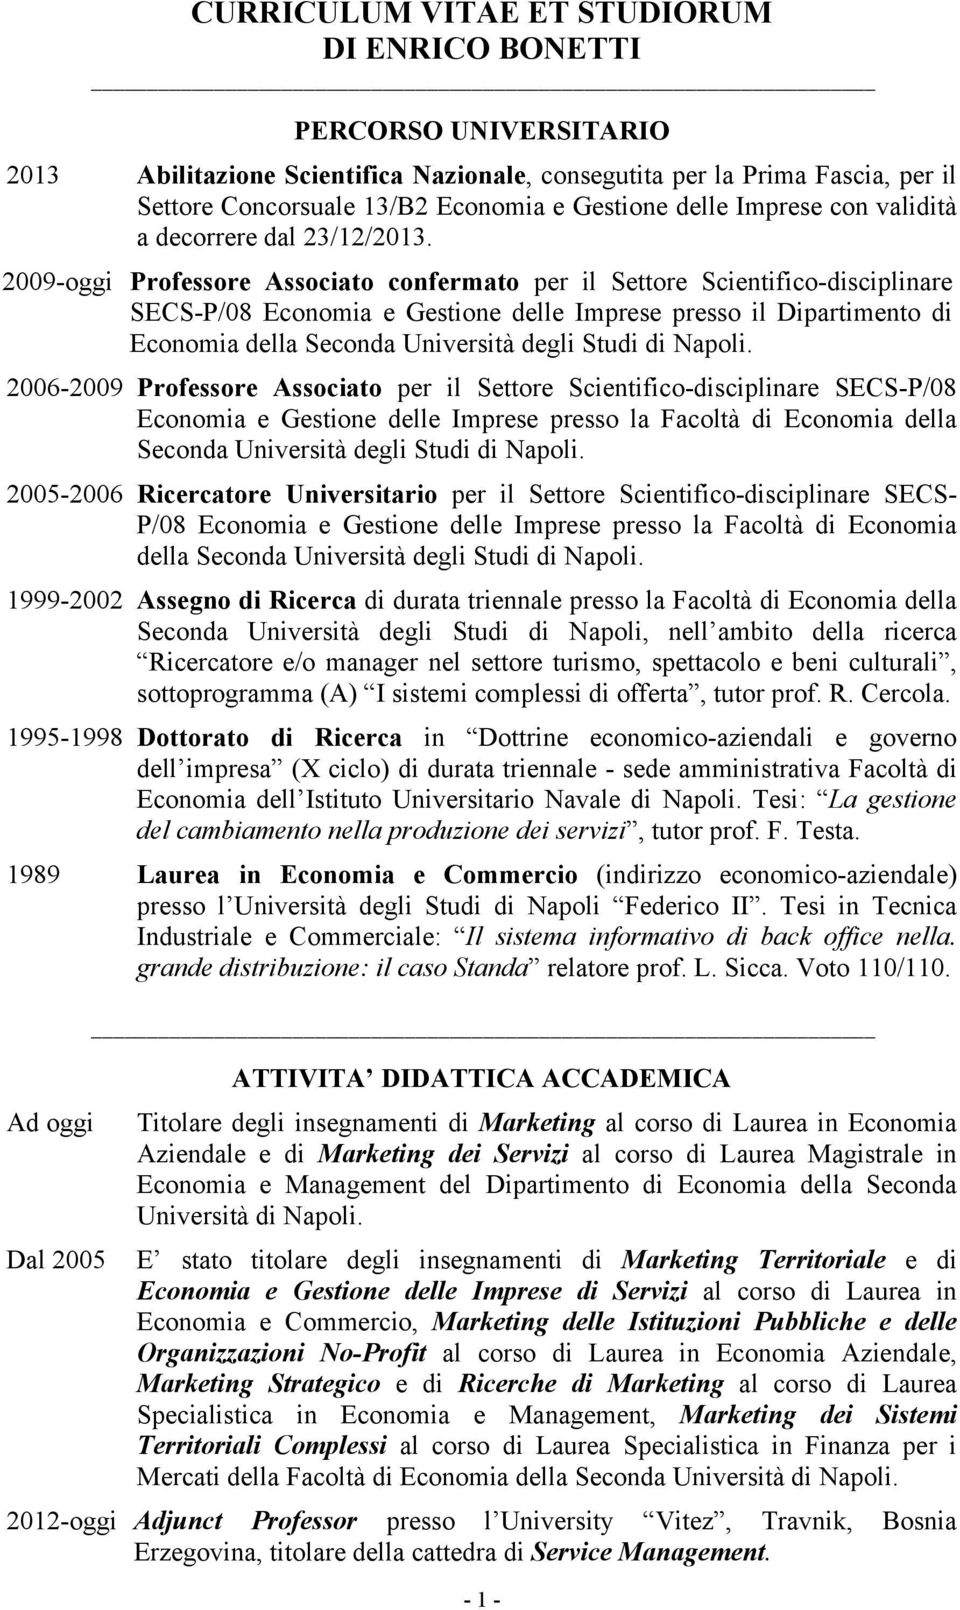 2009-oggi Professore Associato confermato per il Settore Scientifico-disciplinare SECS-P/08 Economia e Gestione delle Imprese presso il Dipartimento di Economia della Seconda Università degli Studi